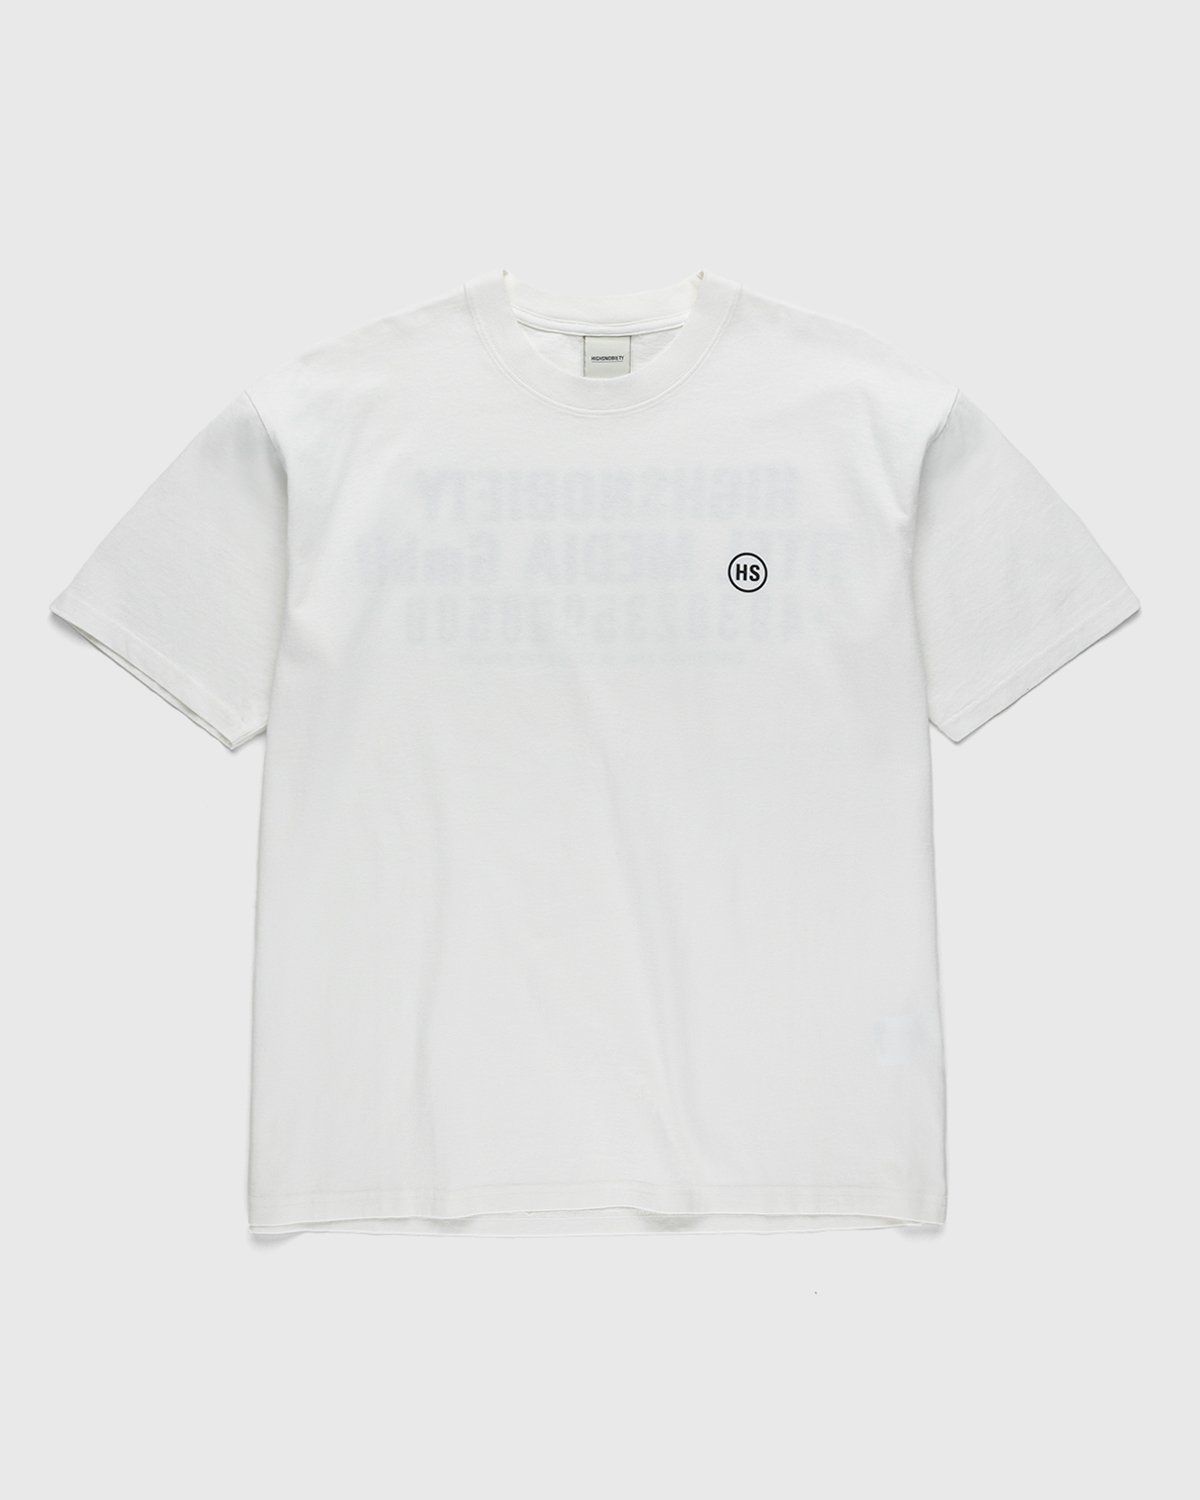 Highsnobiety – Titel Media GmbH T-Shirt White - T-shirts - White - Image 2